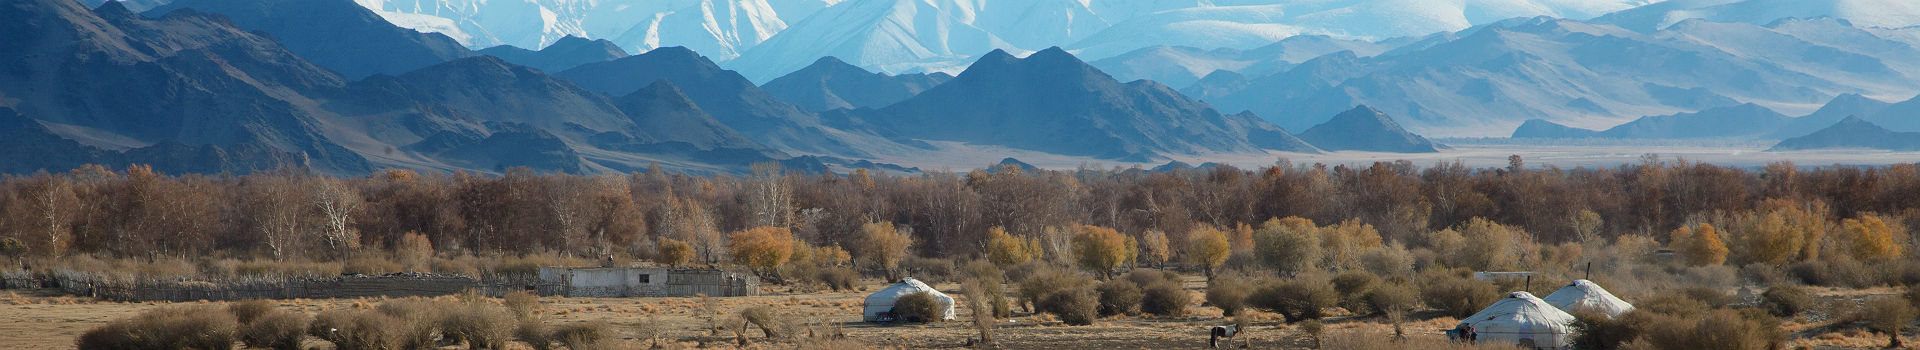 Asie Centrale - Mongolie - Vue panoramique sur les steppes mongoles et la vie nomade